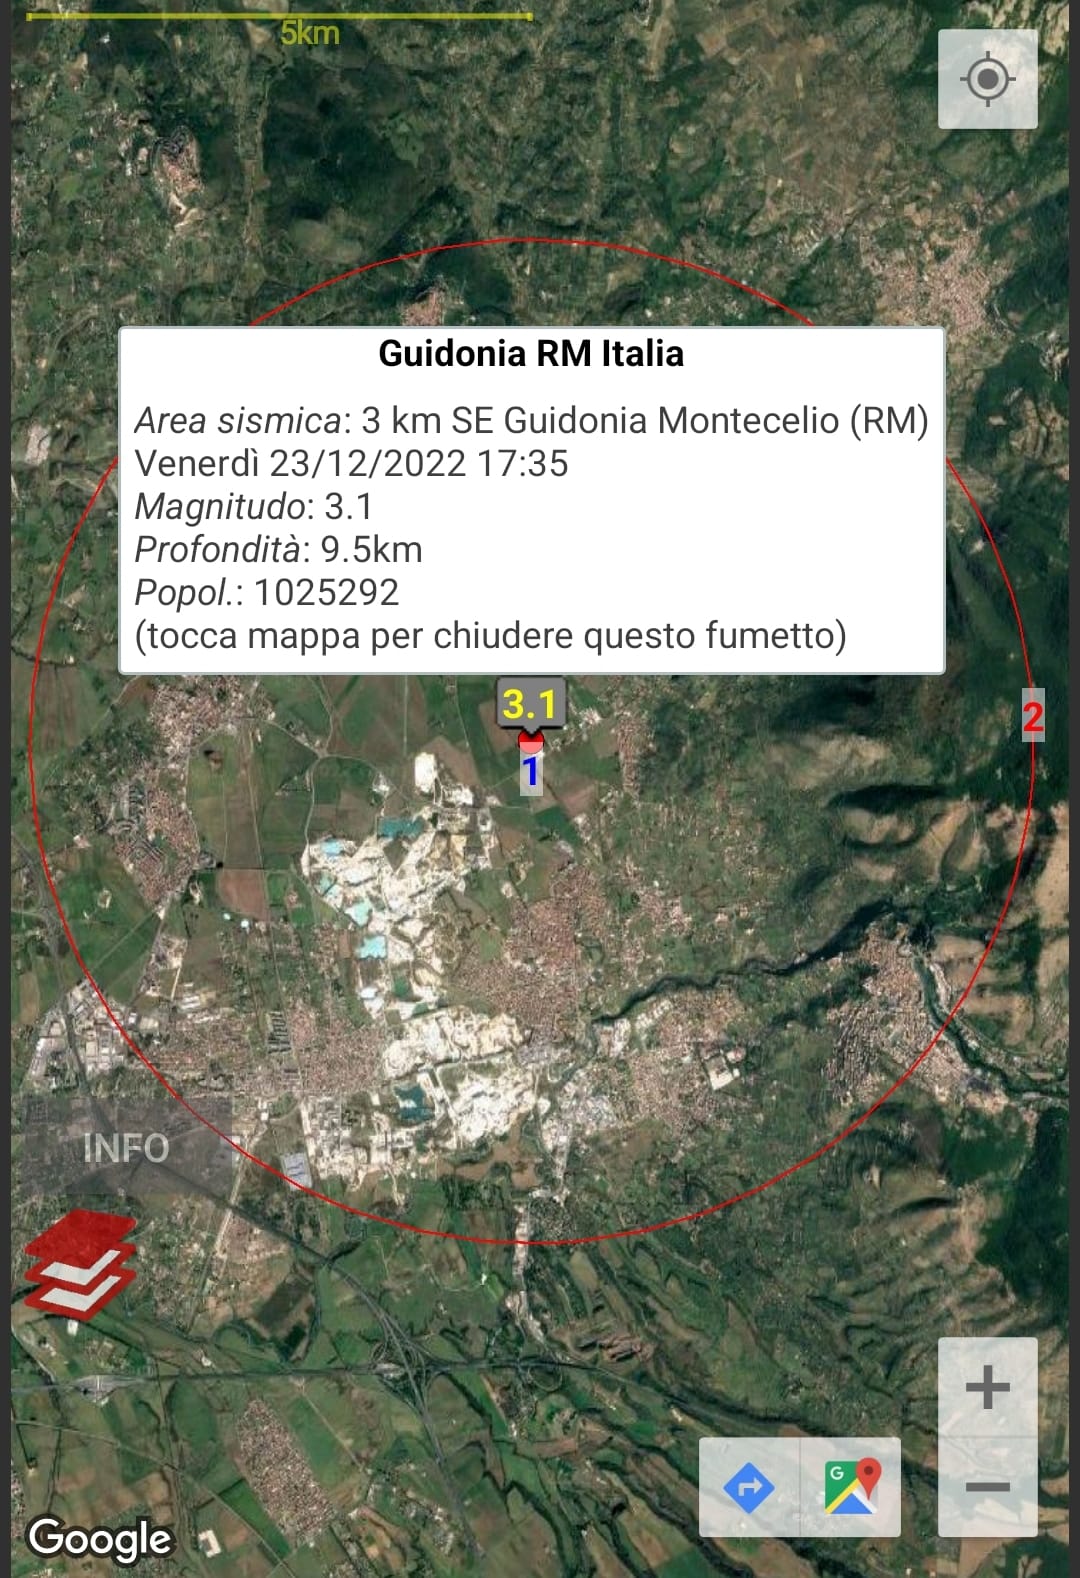 Terremoto con epicentro a Guidonia, scossa avvertita fino a Roma 1